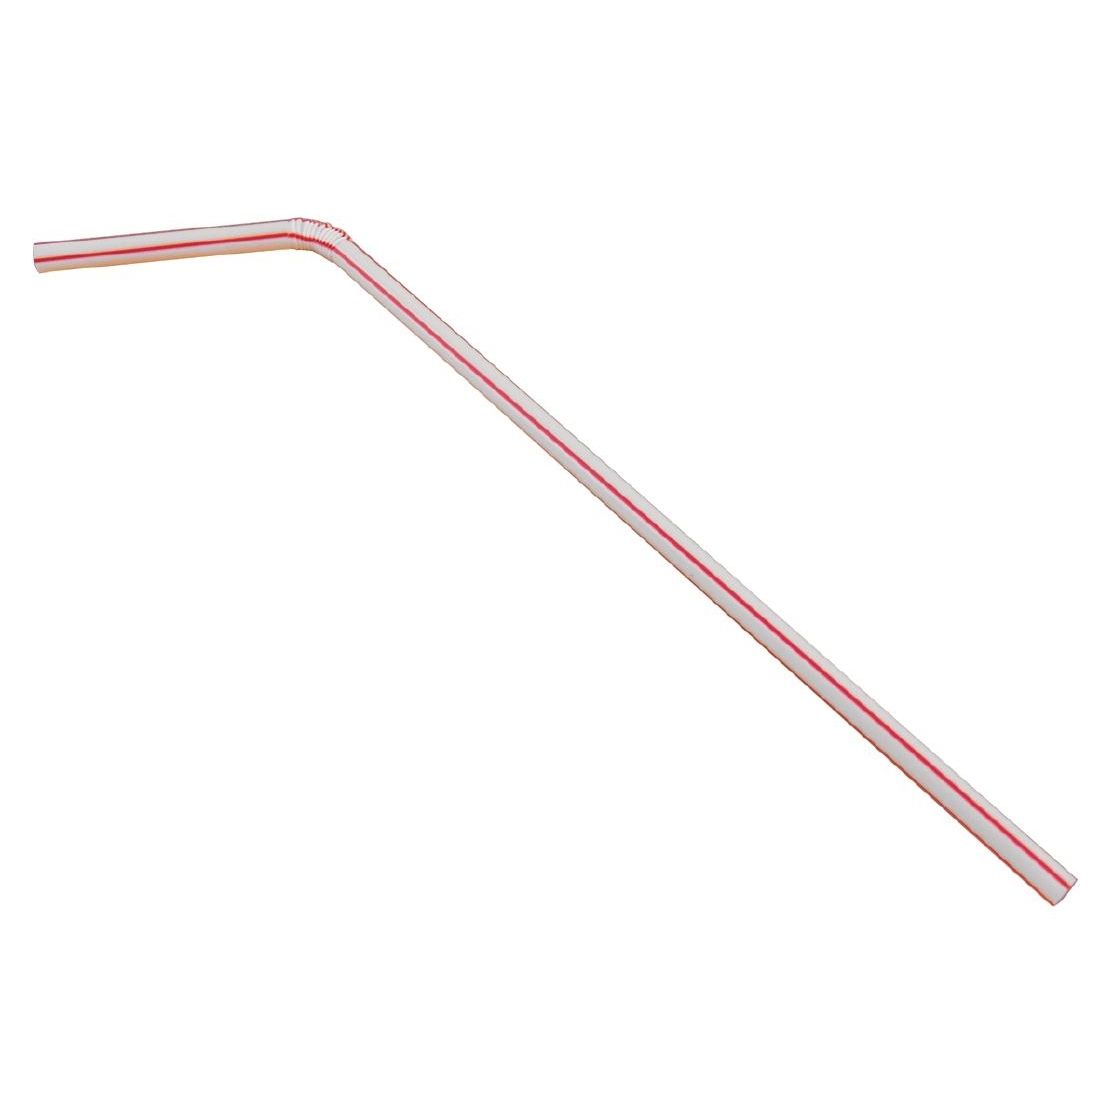 ce310-flexi-straw-striped-single